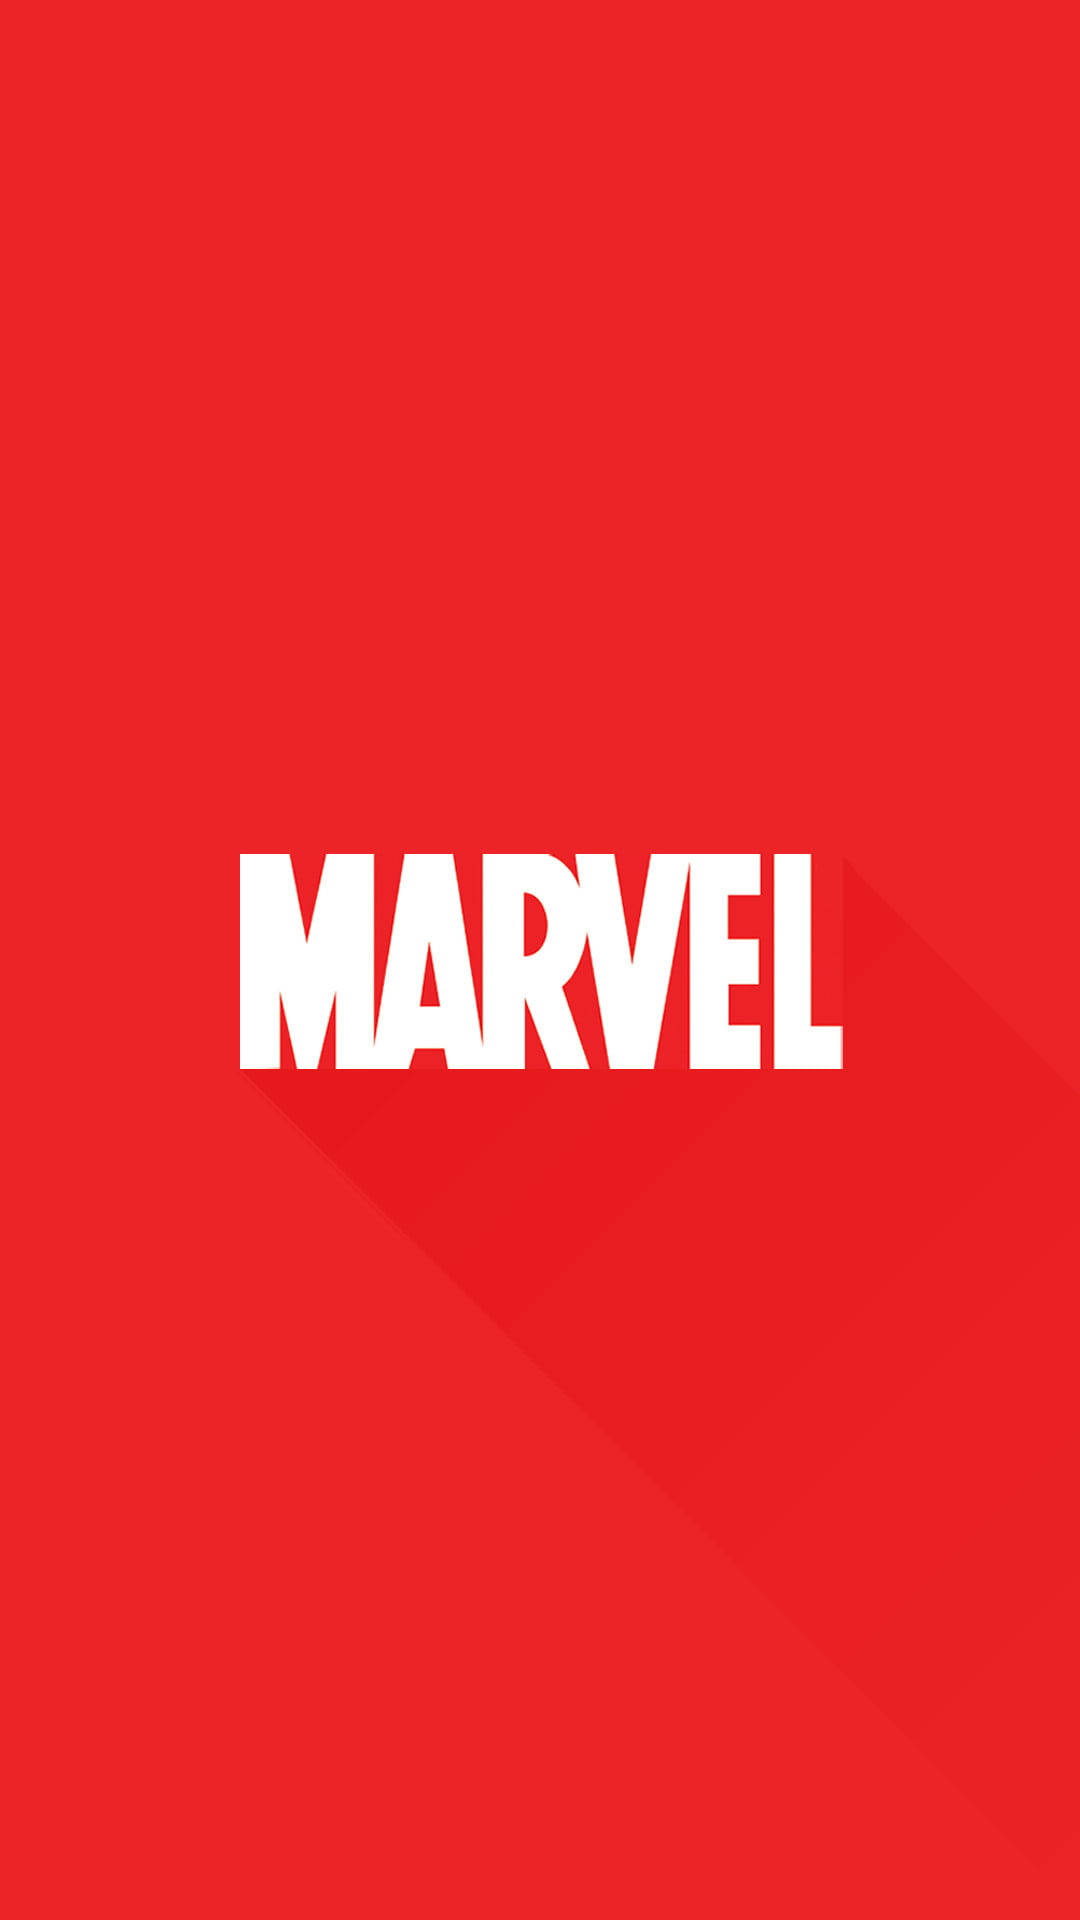 Rotesmarvel-logo Marvel-handy Wallpaper